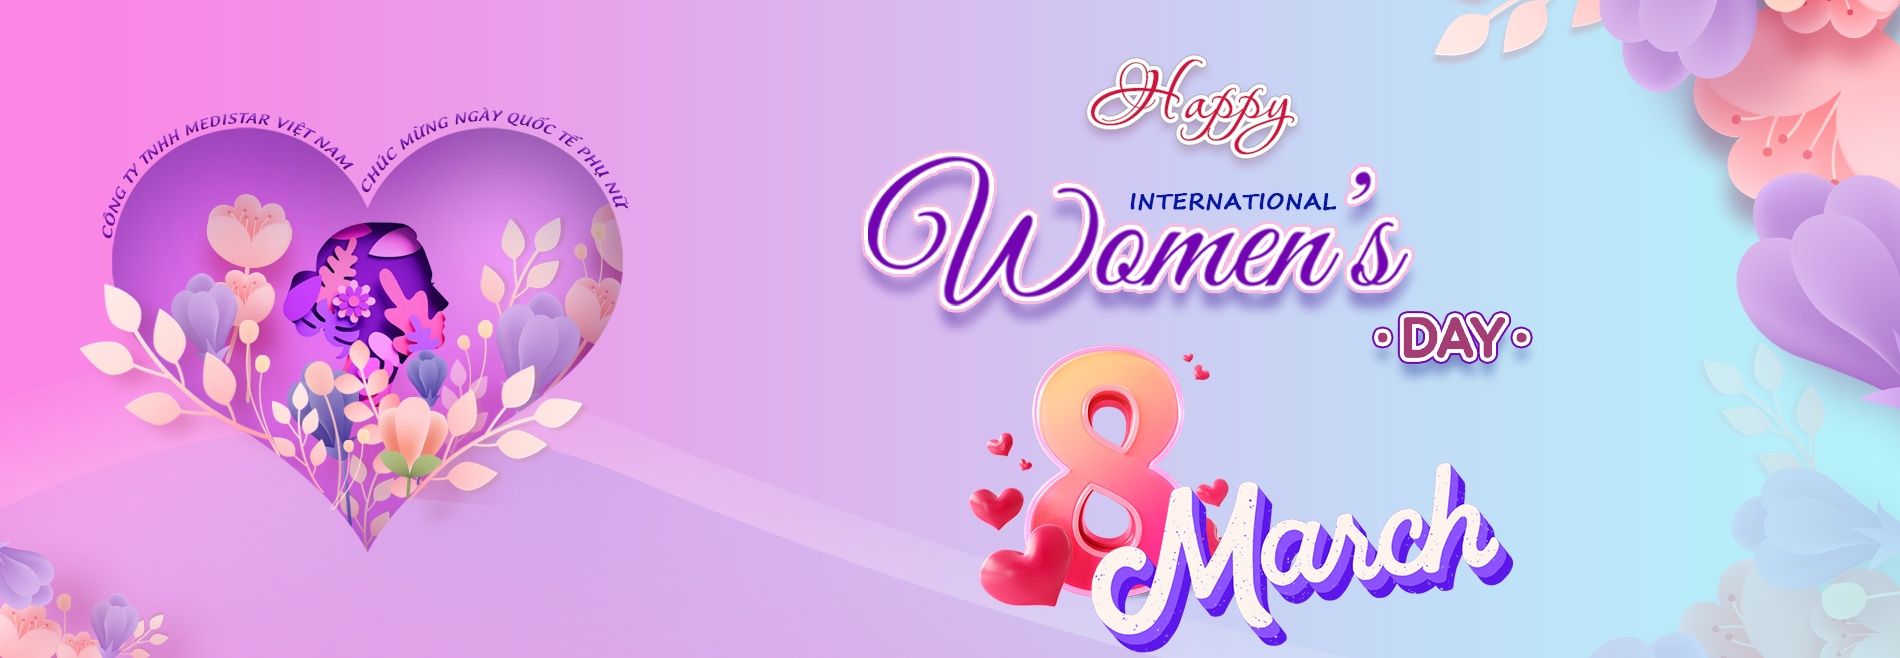 Chúc mừng ngày Quốc tế Phụ nữ 8 tháng 3